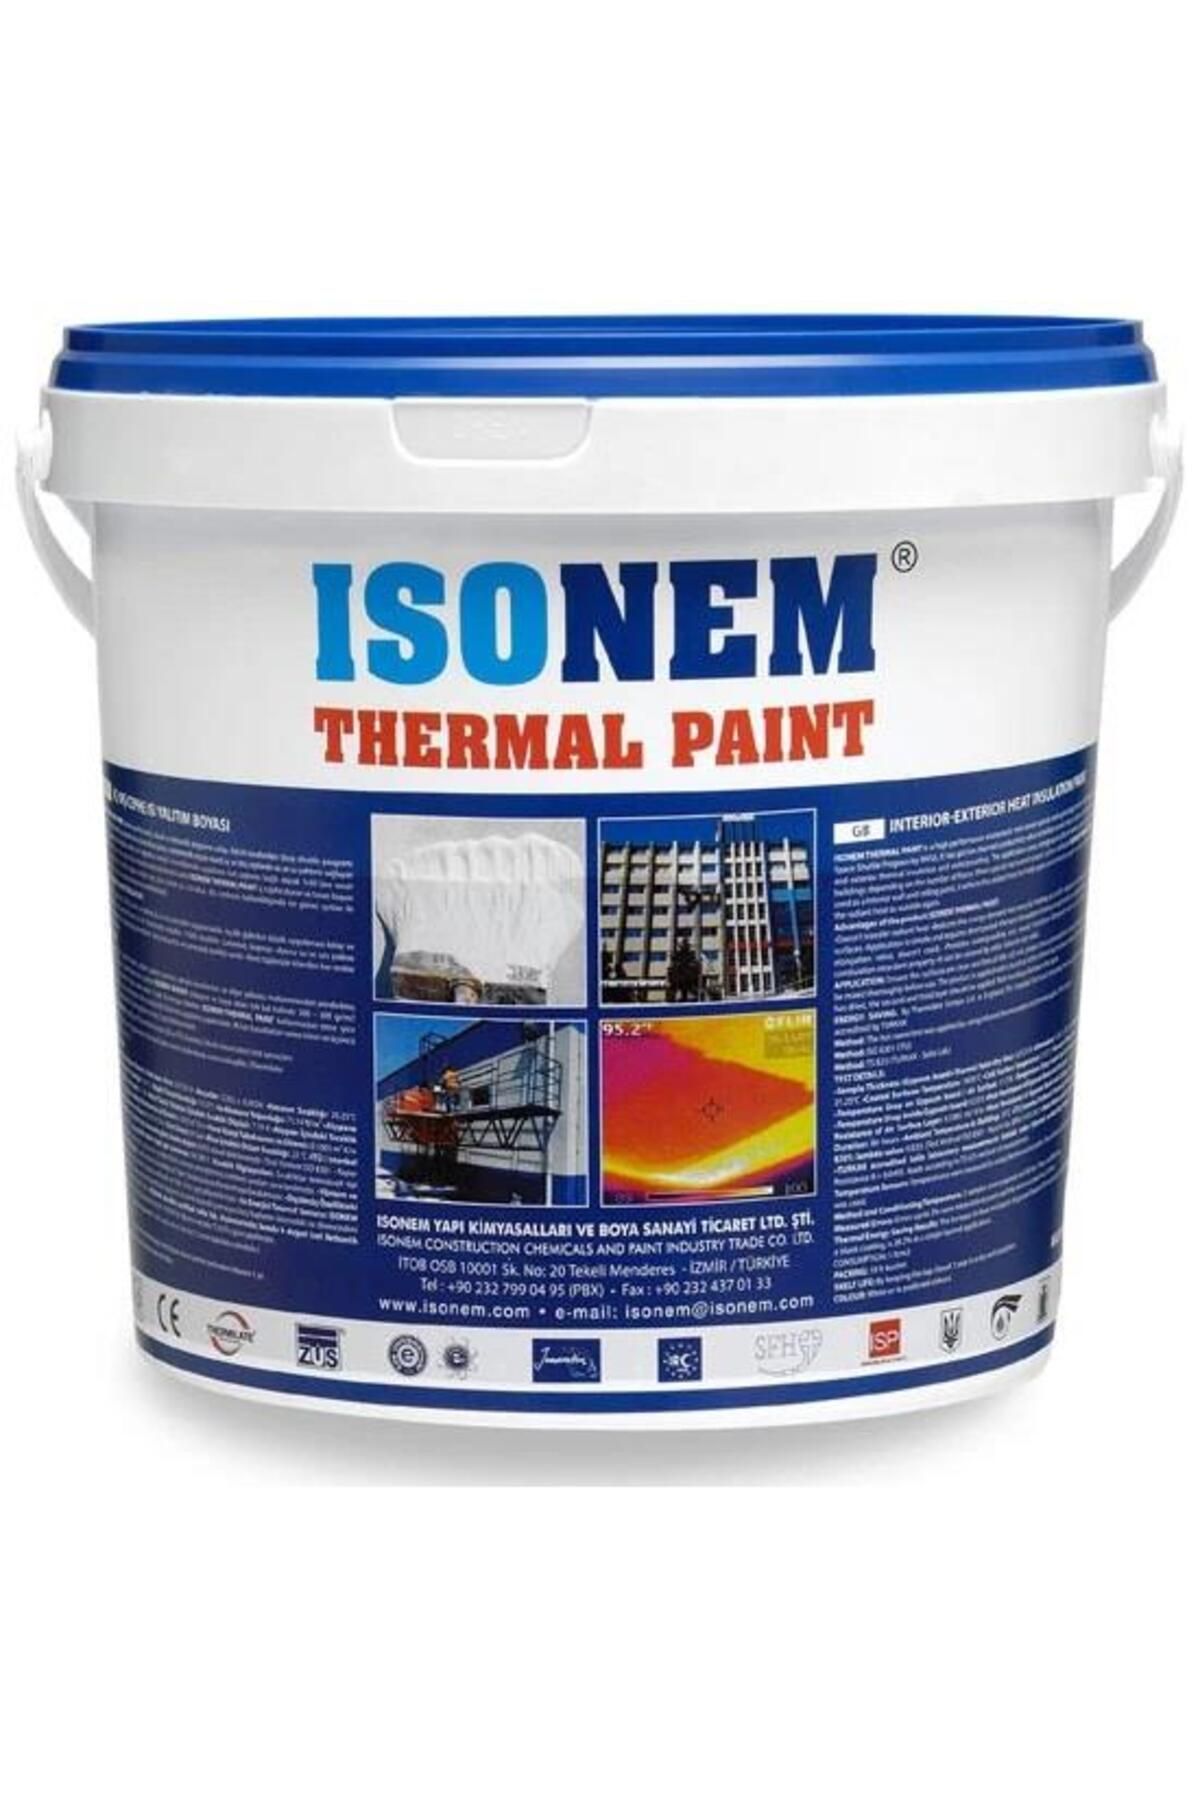 Isonem Thermal Paint Isı Yalıtım Boyası 18lt Beyaz